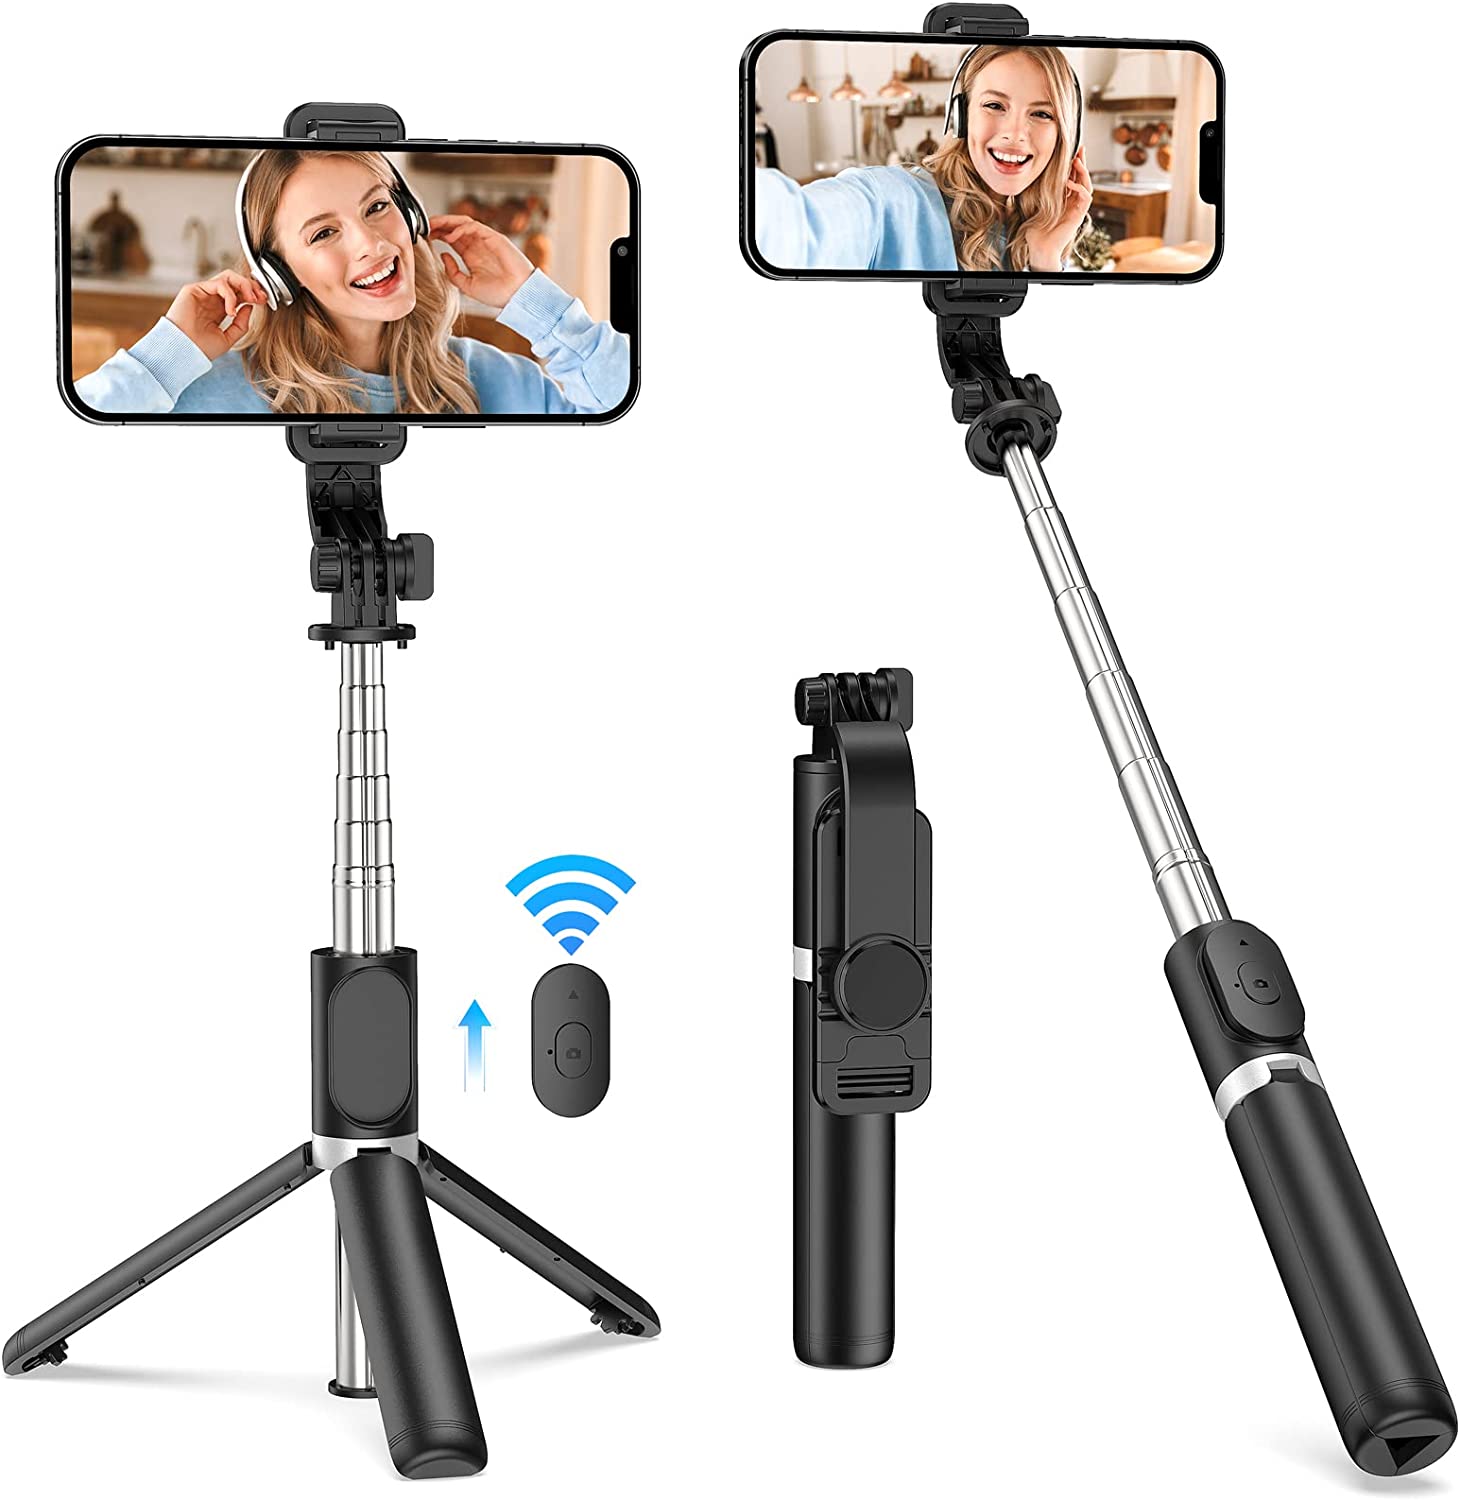 JiaSiFu Portable Selfie Stick, Handheld Tripod – Just $19.98 at Amazon